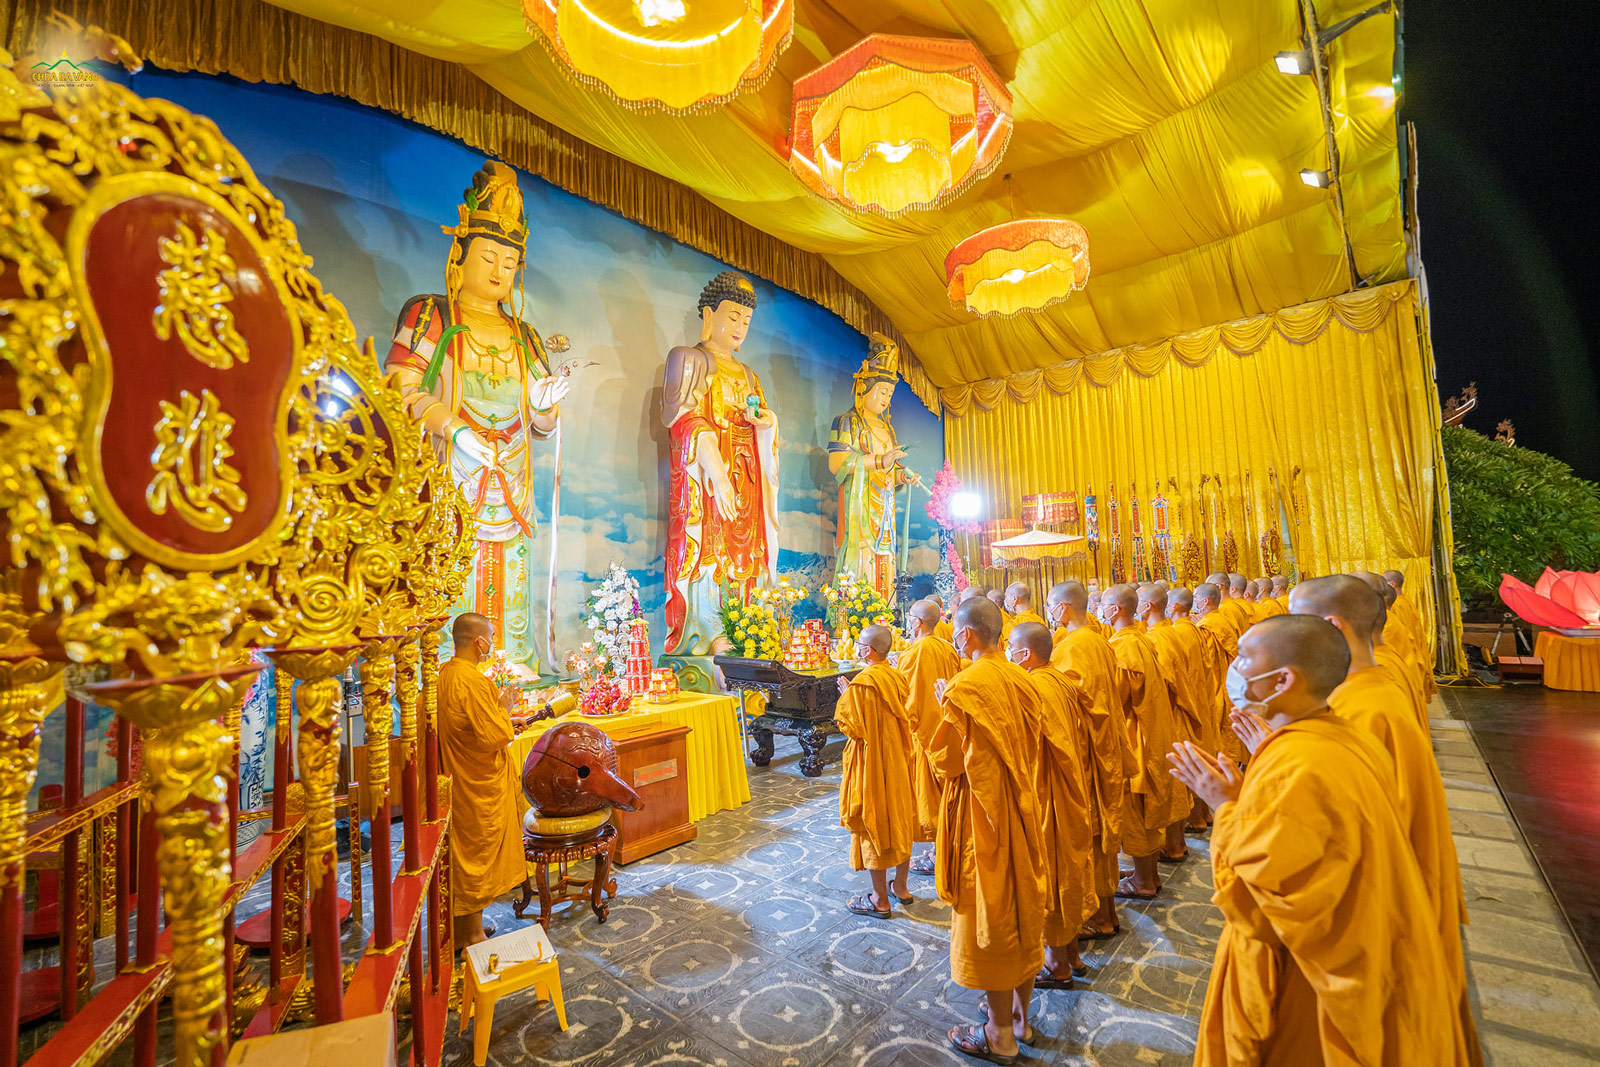   Chư Tăng đối trước tôn tượng Tam Thế Phật, tụng một thời kinh giúp chúng sinh phần nào được giác ngộ để sớm được giải thoát, an vui.  